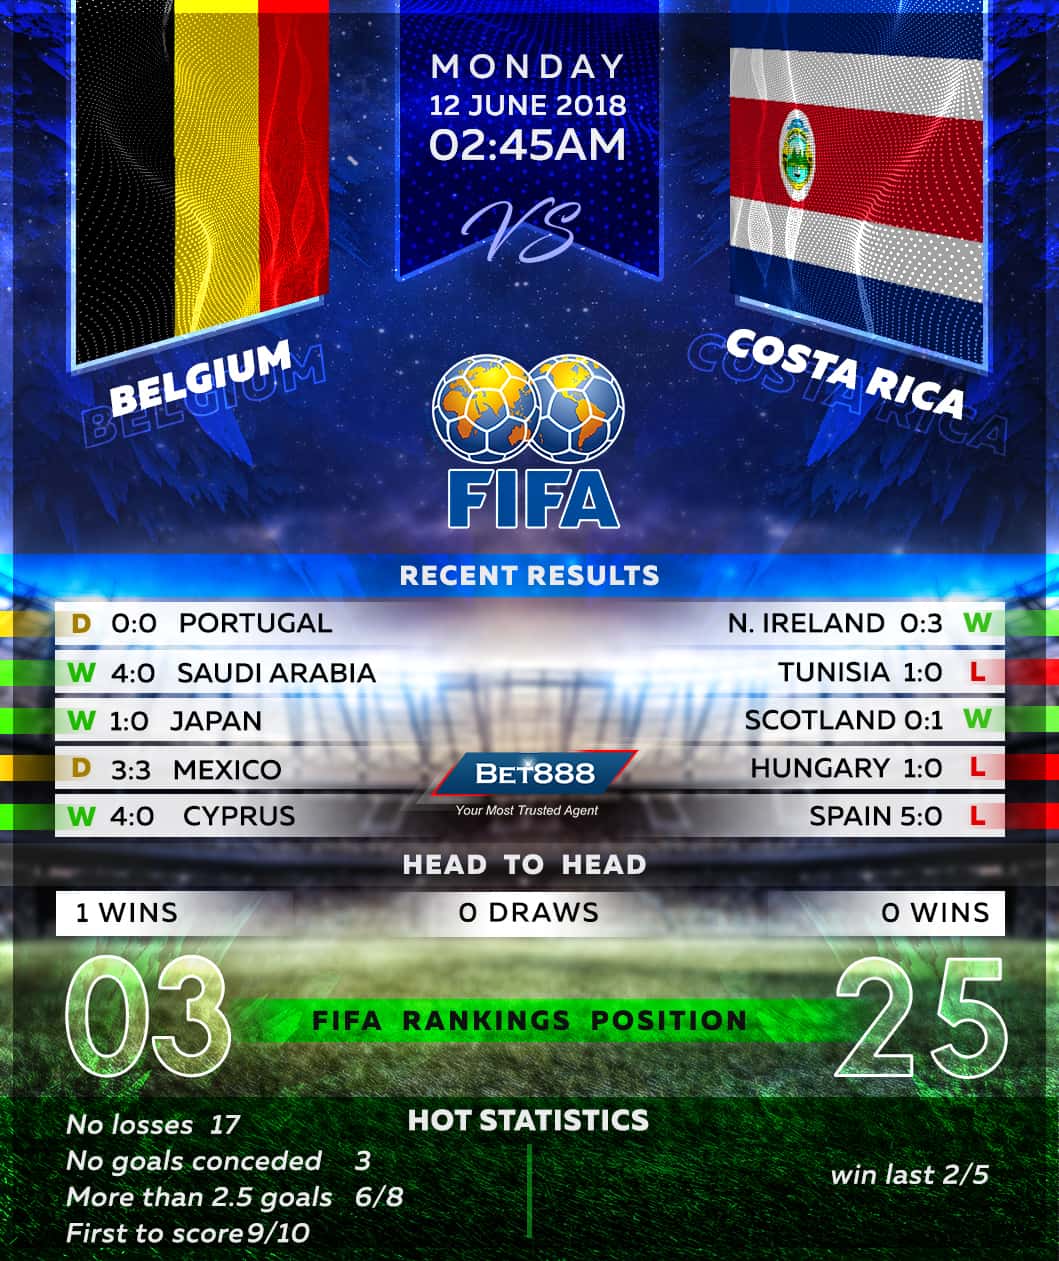 Belgium vs Costa Rica 12/06/18